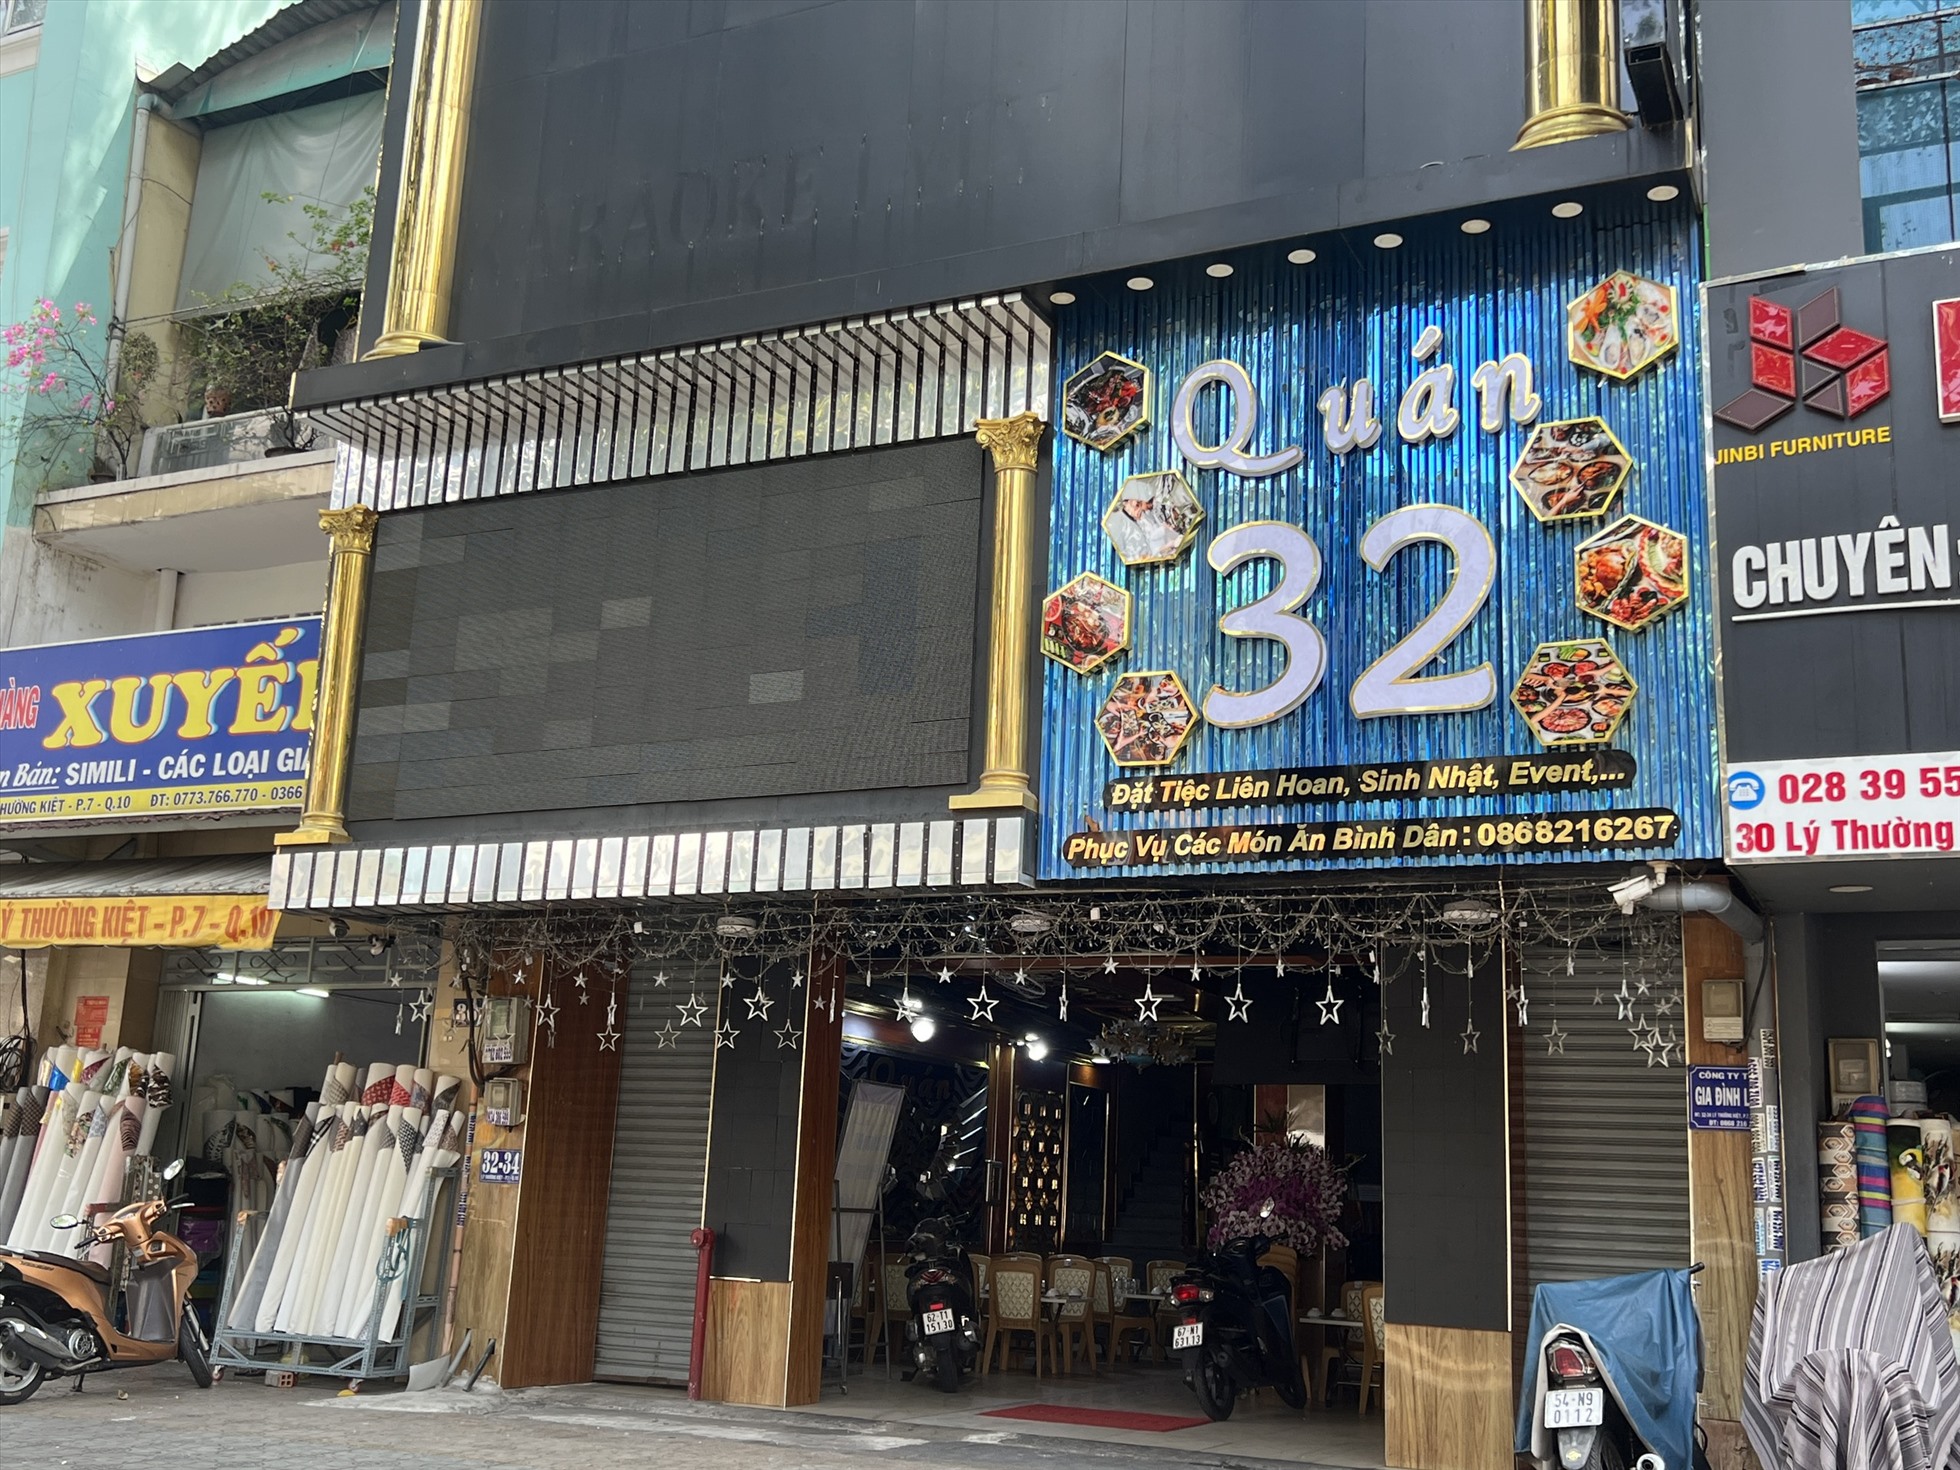 Một quán karaoke trên đường Lý Thường Kiệt (quận 11) đã đóng cửa hoàn toàn, dỡ bảng hiệu quảng cáo karaoke. Thay vào đó, chủ tiệm tận dụng mặt bằng, chuyển đổi sang kinh doanh nhà hàng, quán ăn để cầm cự.